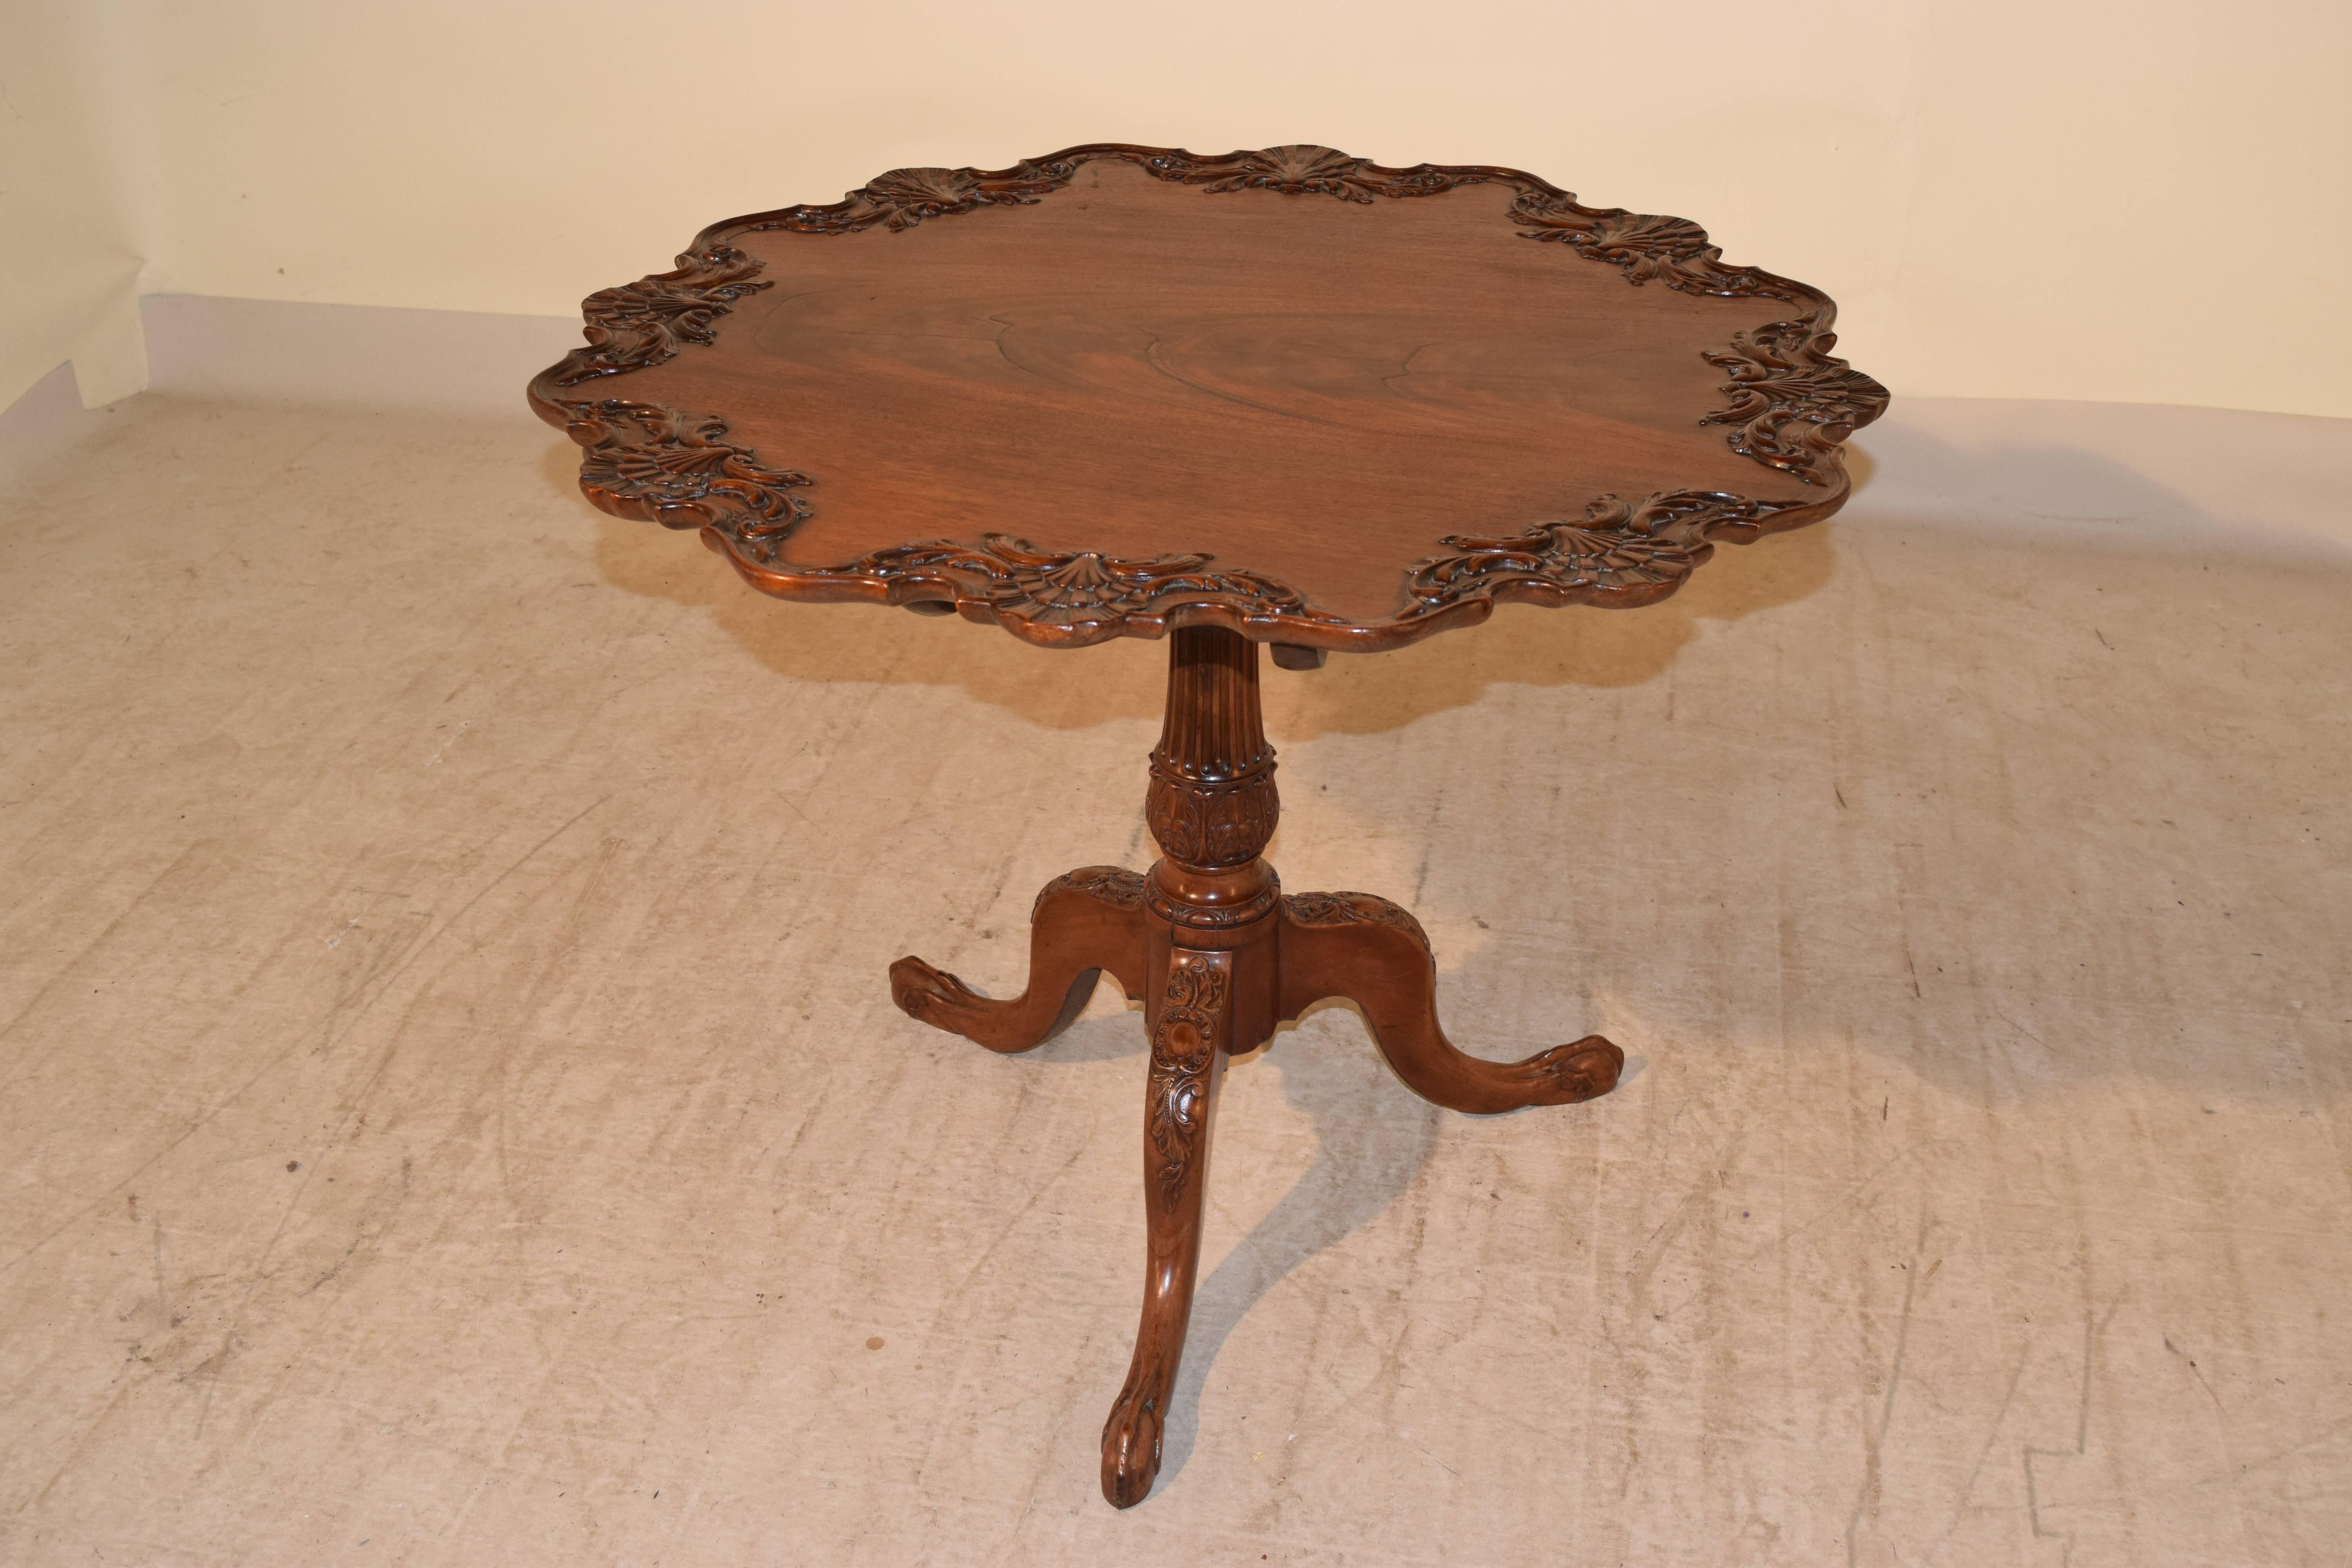 irischer Teetisch aus dem 18. Jahrhundert aus Mahagoniholz. Die Oberseite hat einen wunderschön geschwungenen und handgeschnitzten Rand mit Muscheldekor. Auch die Decke ist aus wunderschönem, gemasertem Holz. Der Sockel ist ein Vogelkäfig auf einem